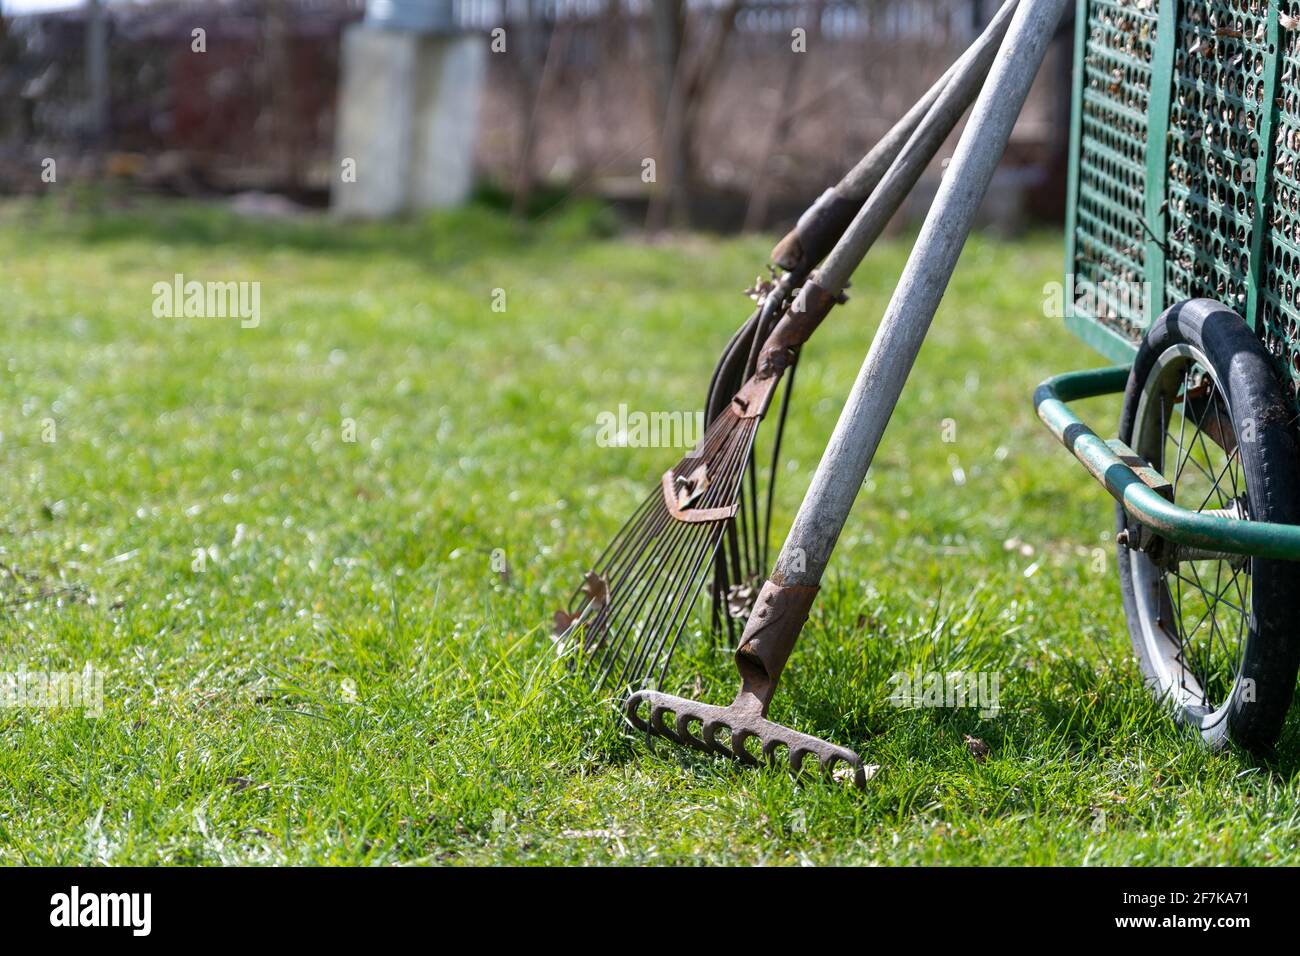 Attrezzi da giardino per la manutenzione del giardino, la pulizia della molla nel giardino, forchette, scopa per ventilatori, rastrelli e rastrelli per erba. Foto Stock